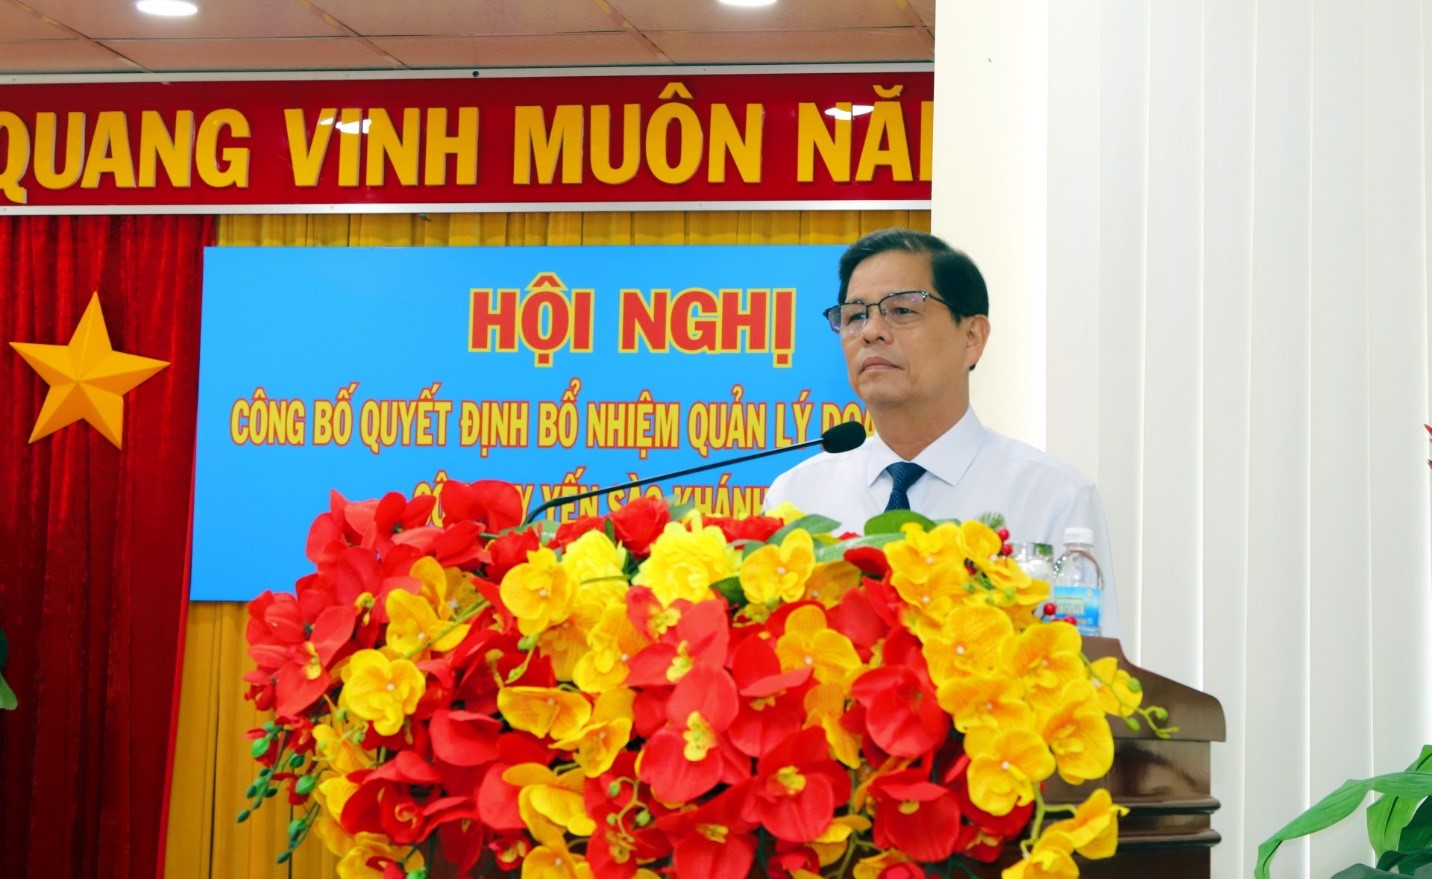 Ông Nguyễn Tấn Tuân, Chủ tịch UBND tỉnh Khánh Hòa phát biểu trong buổi lễ